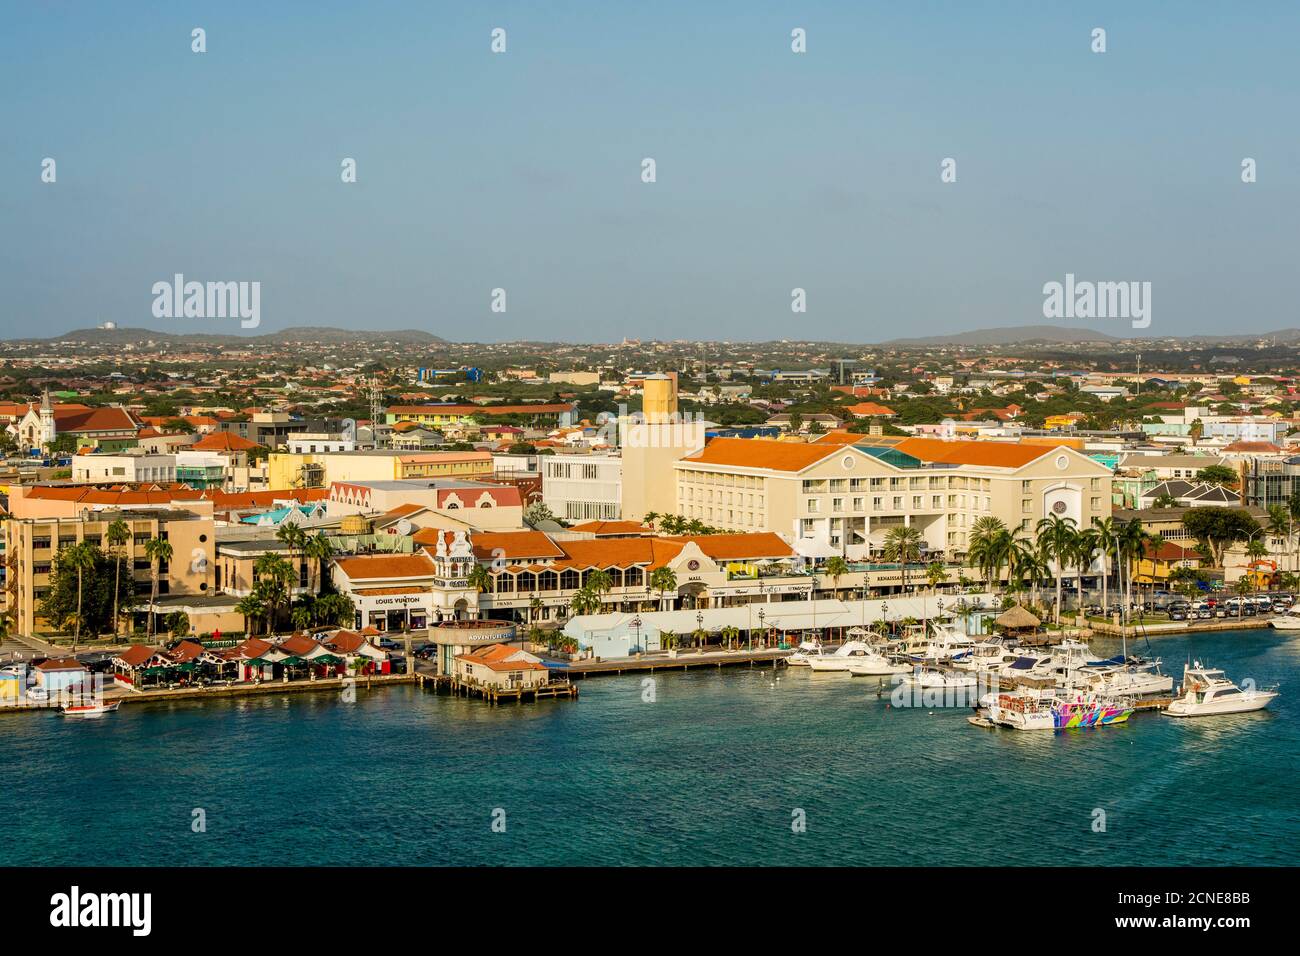 Vue aérienne d'Oranjestad, Aruba, les îles ABC, les Antilles néerlandaises, les Caraïbes, l'Amérique centrale Banque D'Images